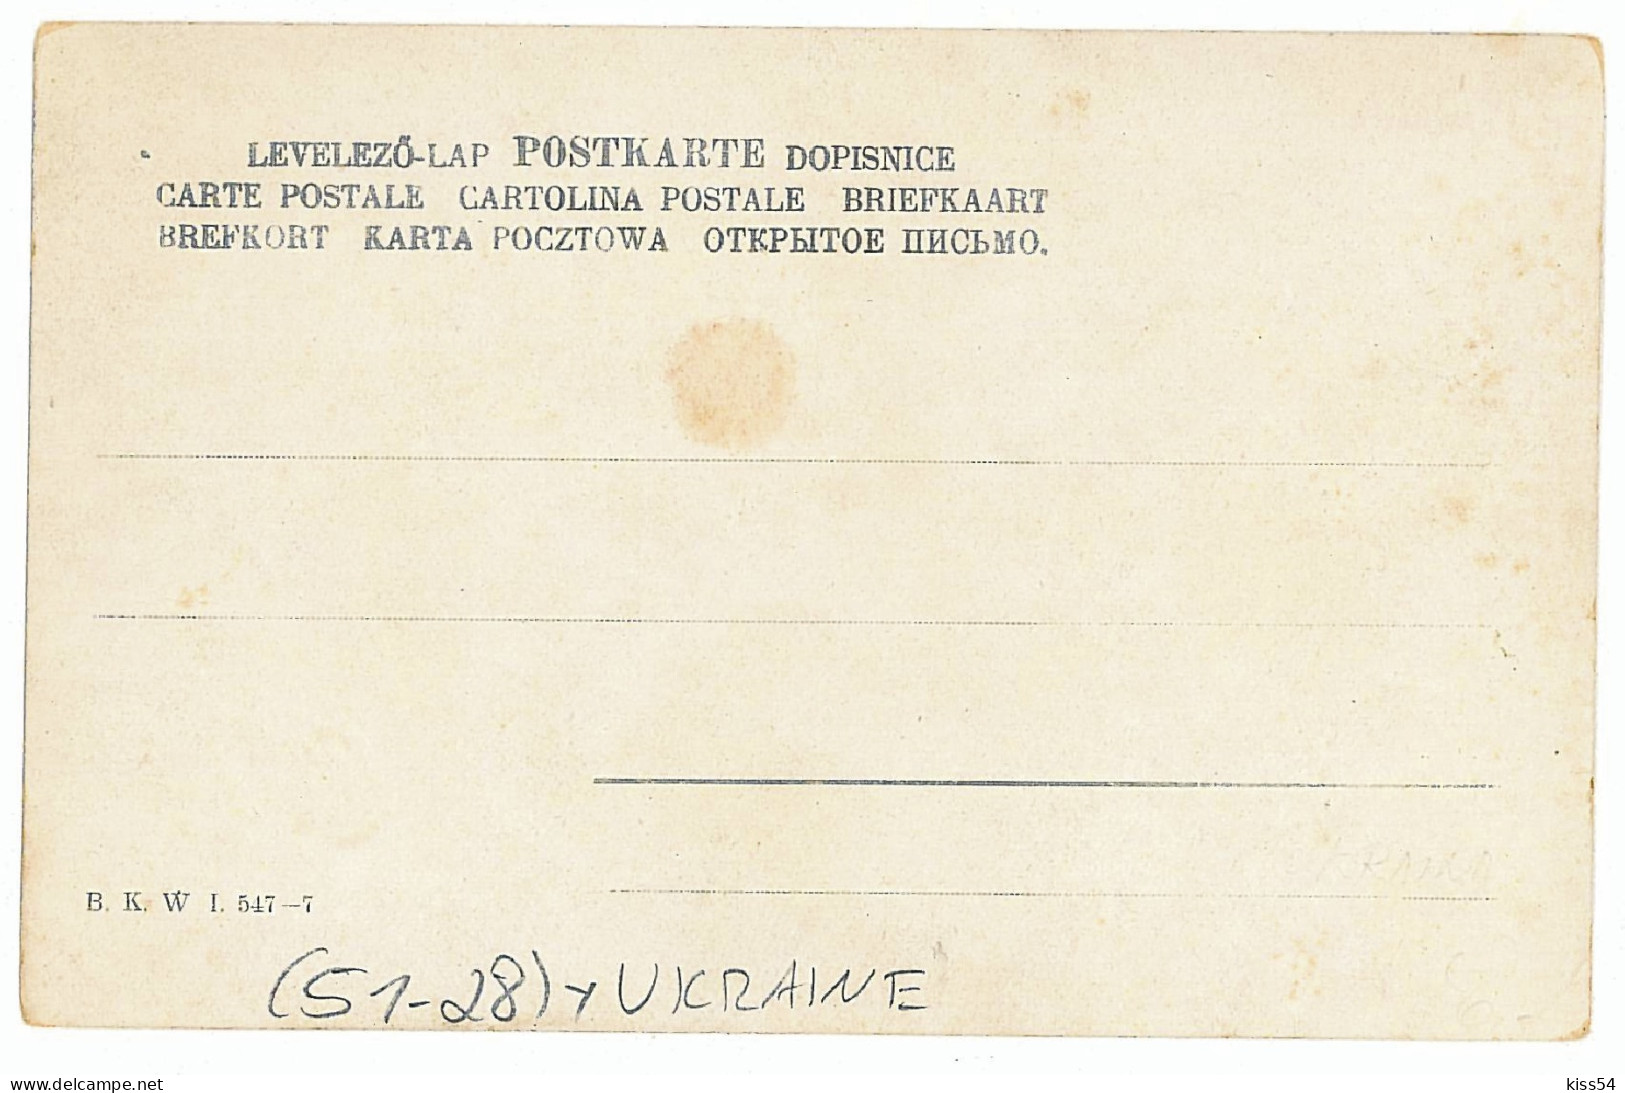 UK 47 - 6014 ETHNICS, GALICIA, Ukraine - Old Postcard - Unused - Ukraine